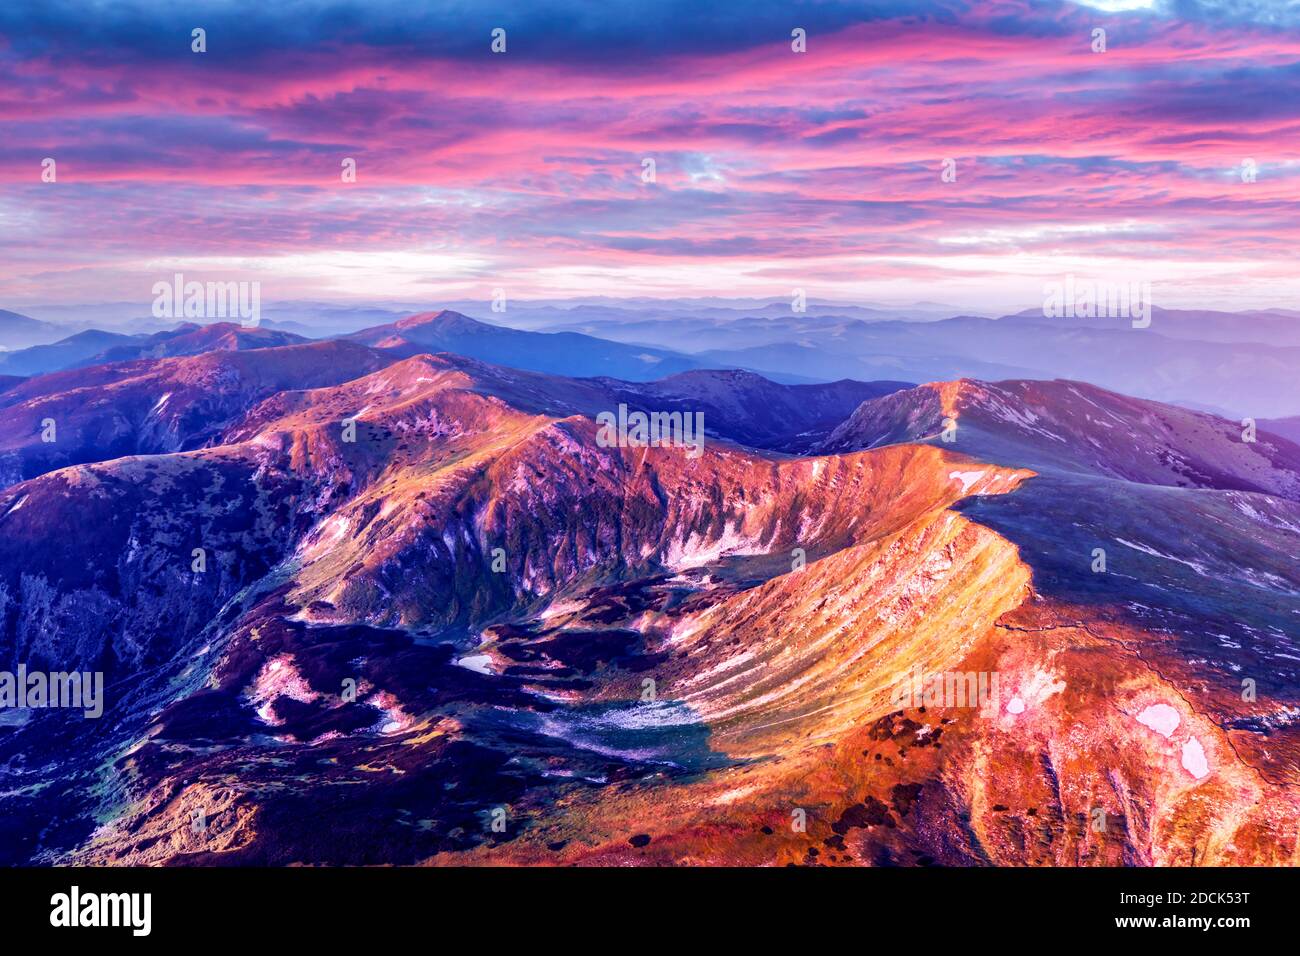 Alte montagne durante il tramonto viola nella stagione primaverile. Fotografia di paesaggio Foto Stock